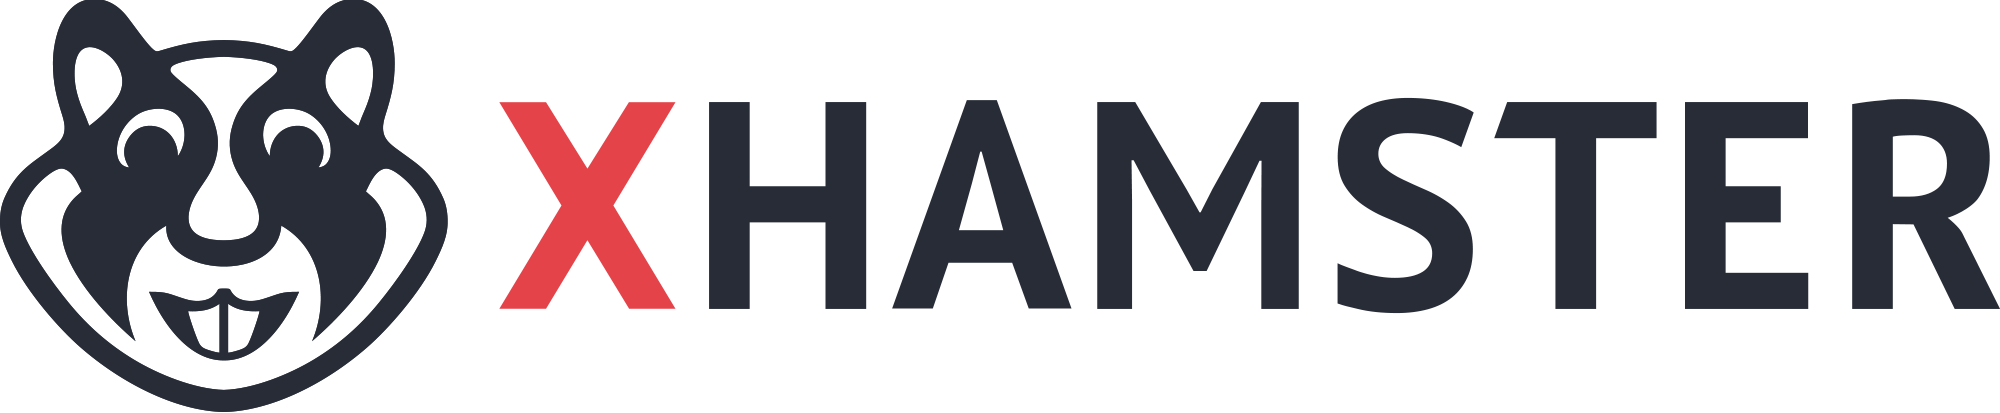 Xhamster, logotipo, Pornografía, Sexualidad, Comunidad sexual,